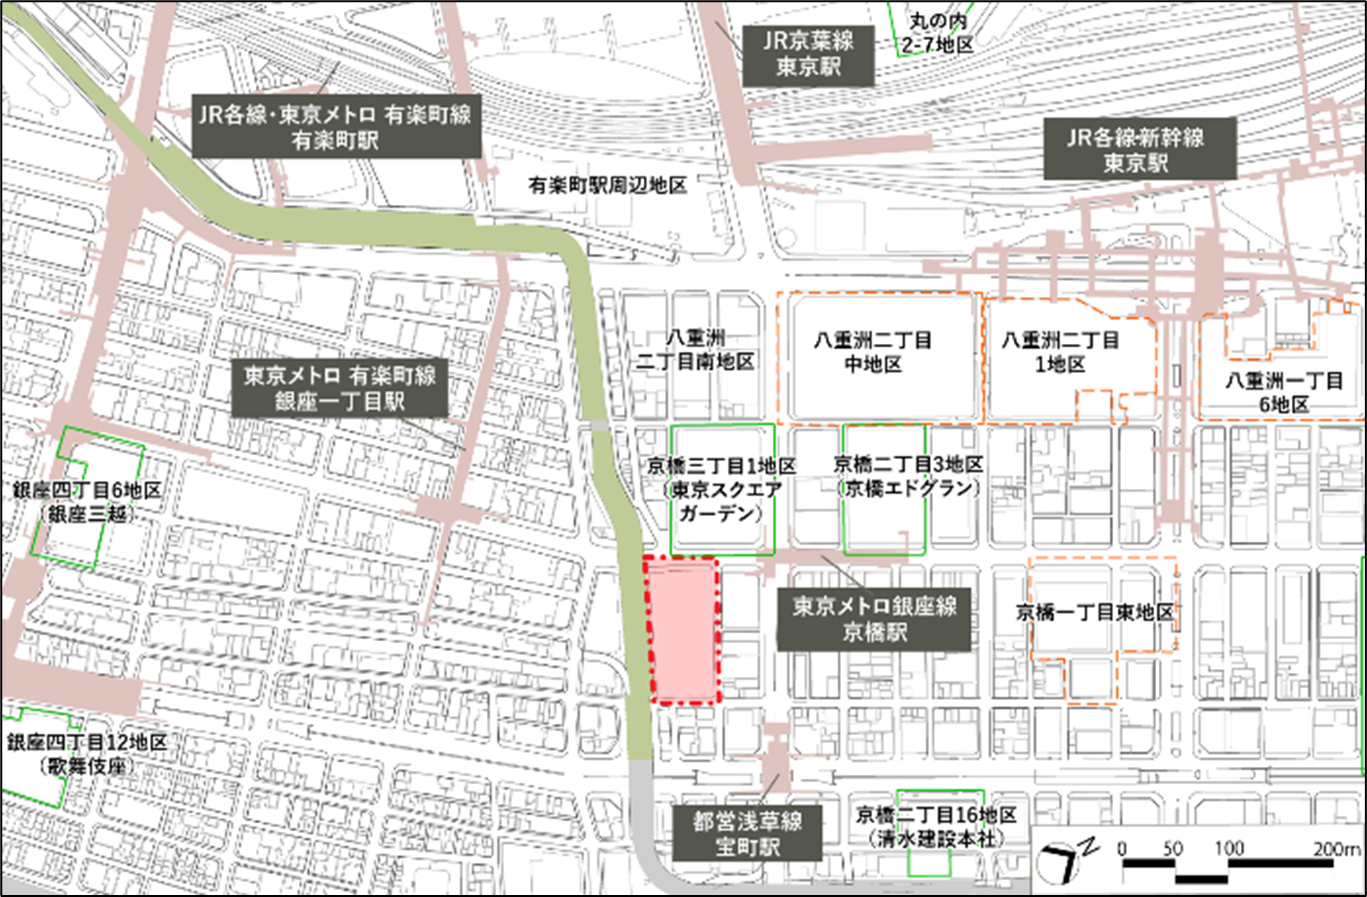 「（仮称）京橋三丁目東地区市街地再開発事業」の計画地。東京メトロ銀座線の京橋駅に隣接する立地で、近隣では他の再開発事業も進められている。 出所：プレスリリース